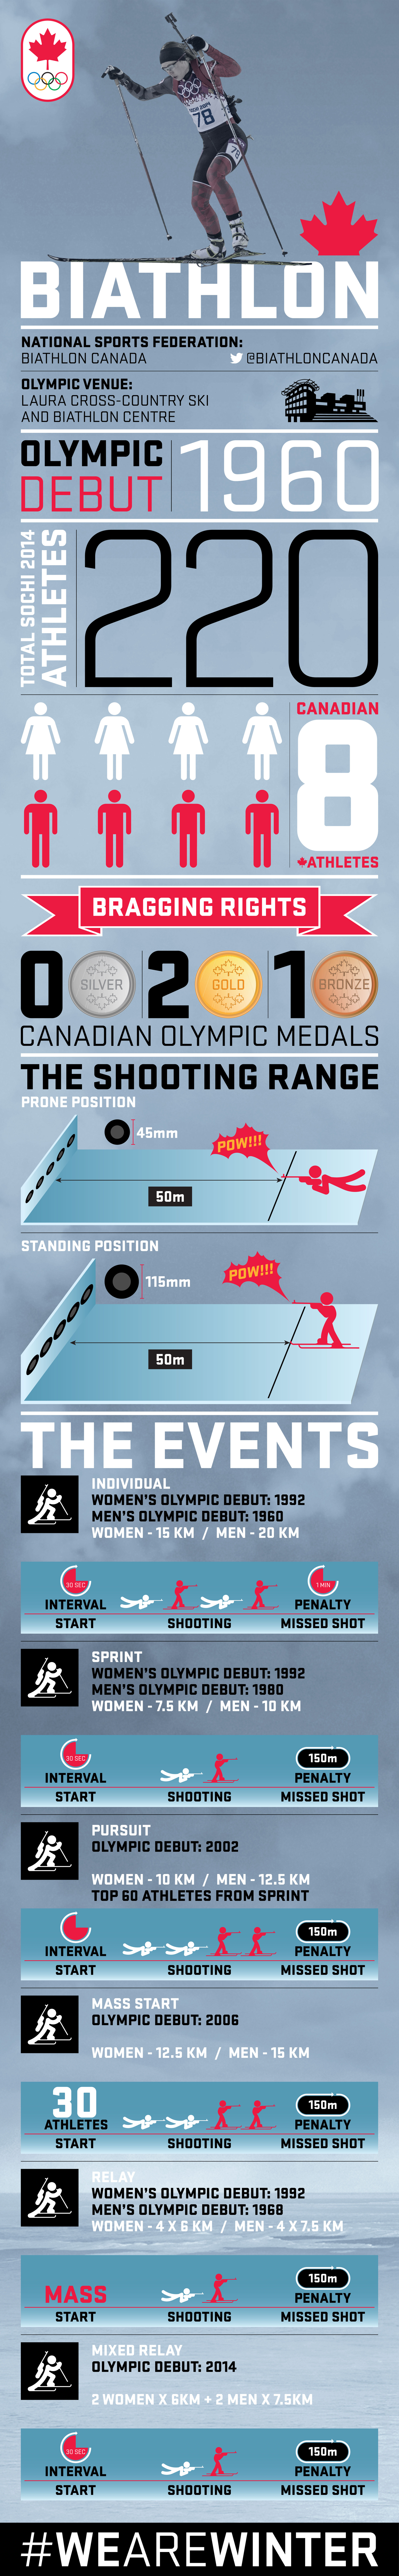 infographic_biathlon_EN